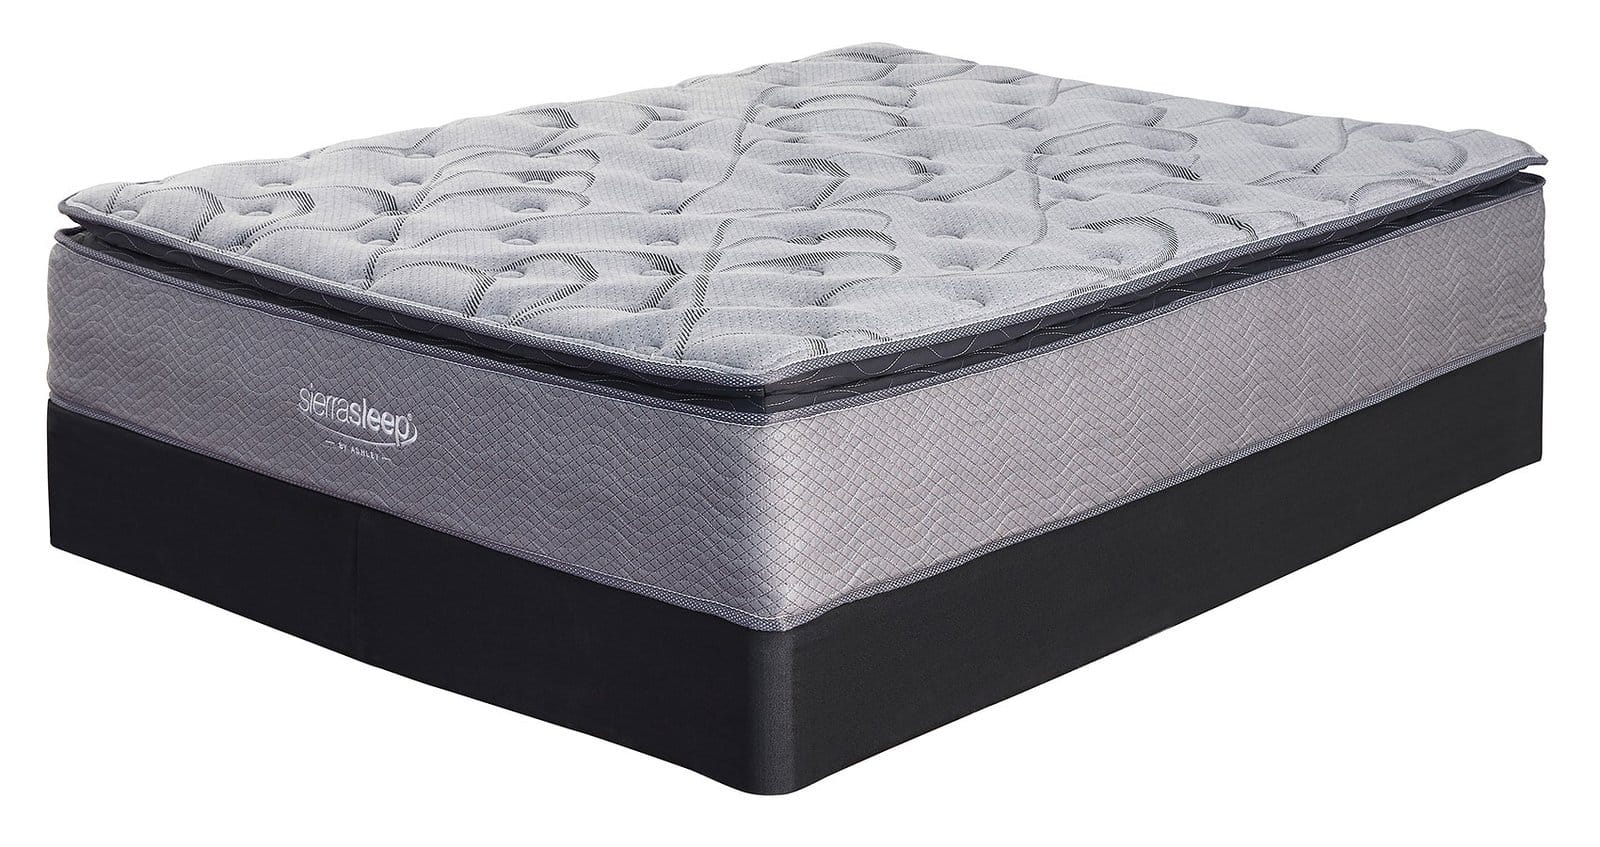 ashley sierra sleep curacao pillow top mattress